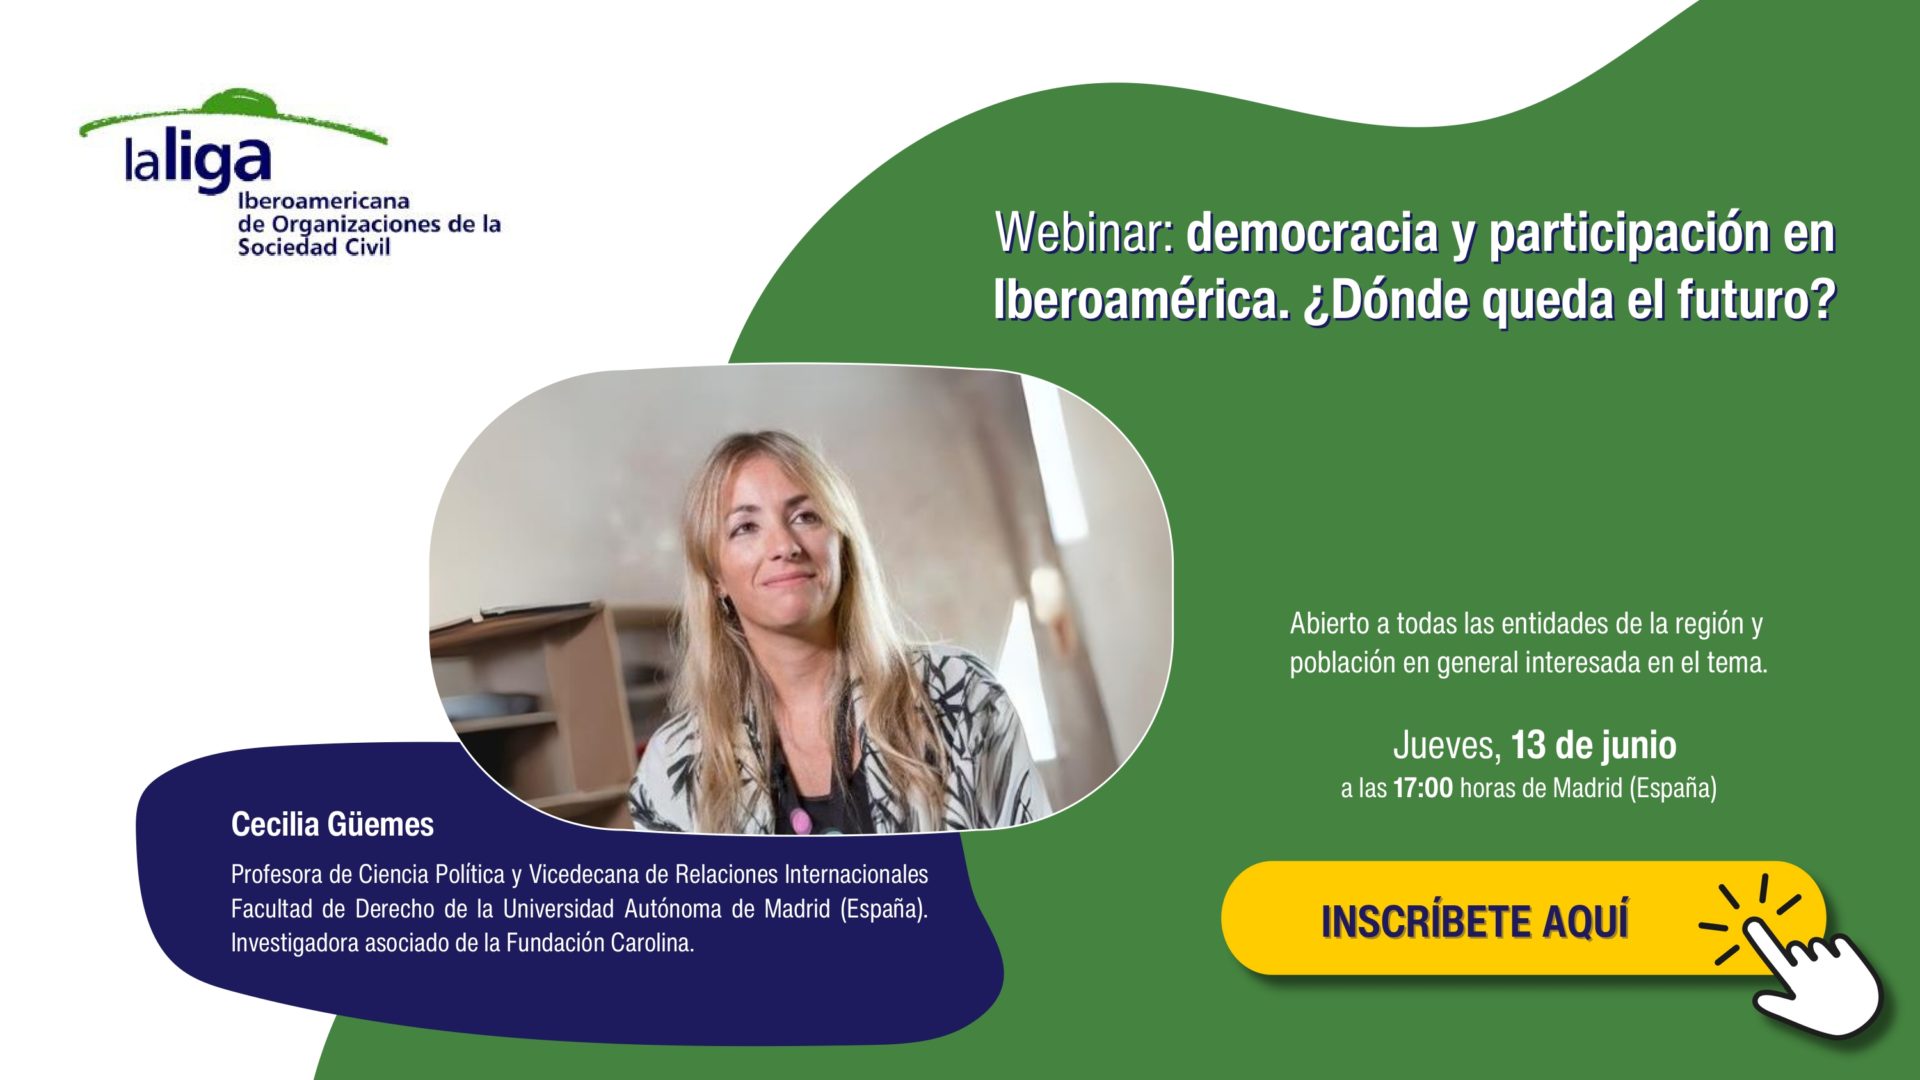 Webinar democracia y participacion en iberoamérica